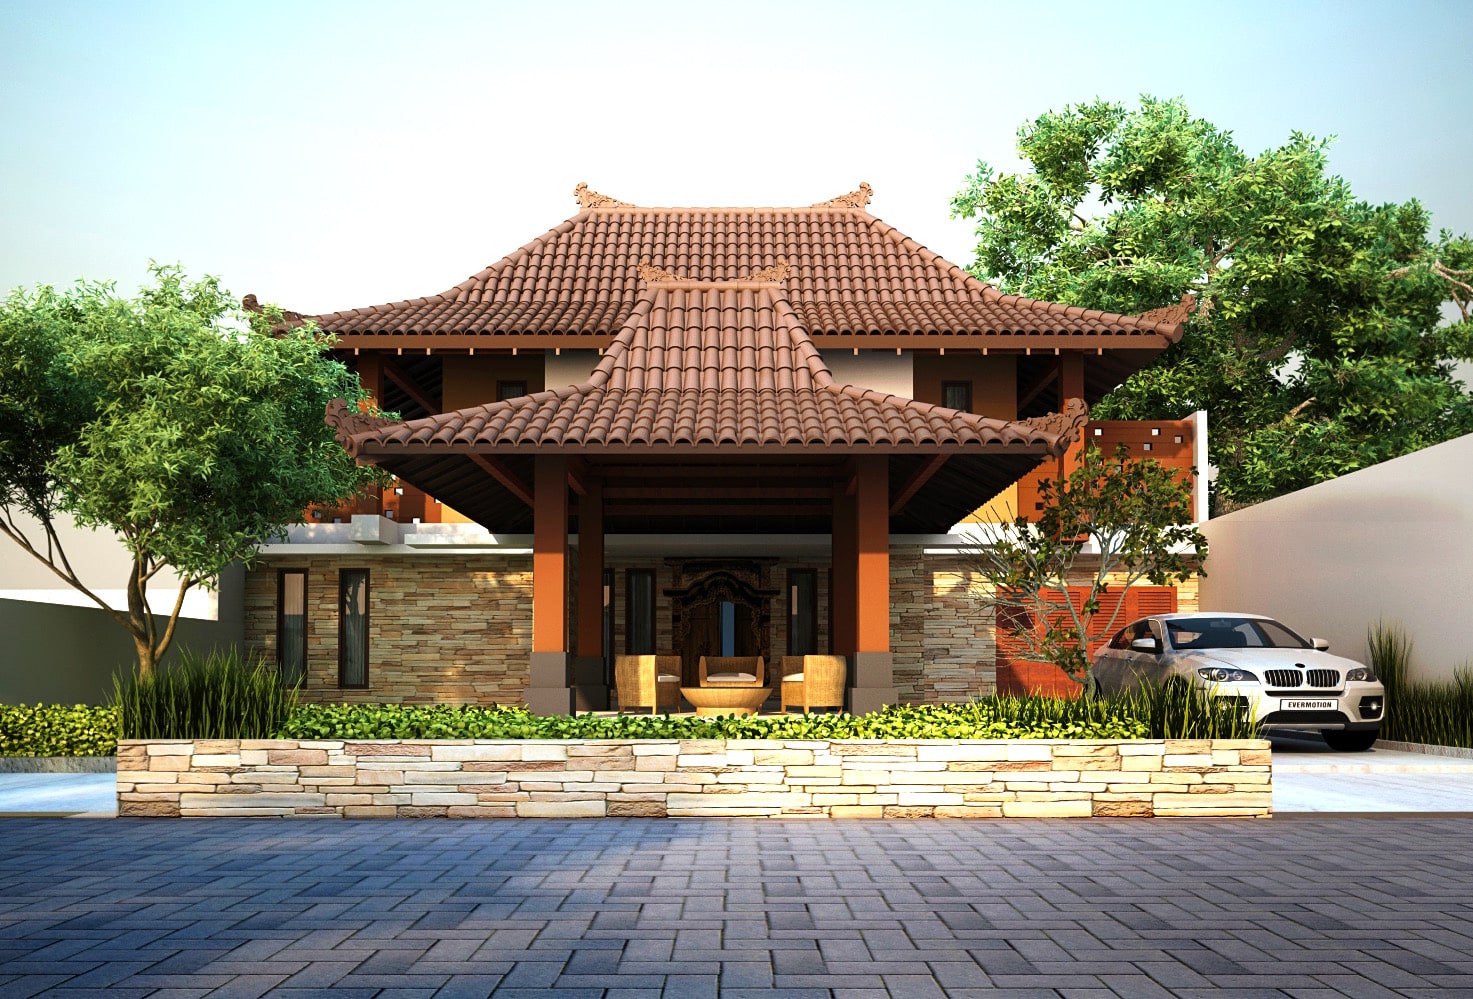 45 Contoh Desain Rumah Jawa dan Joglo (Klasik dan Modern)